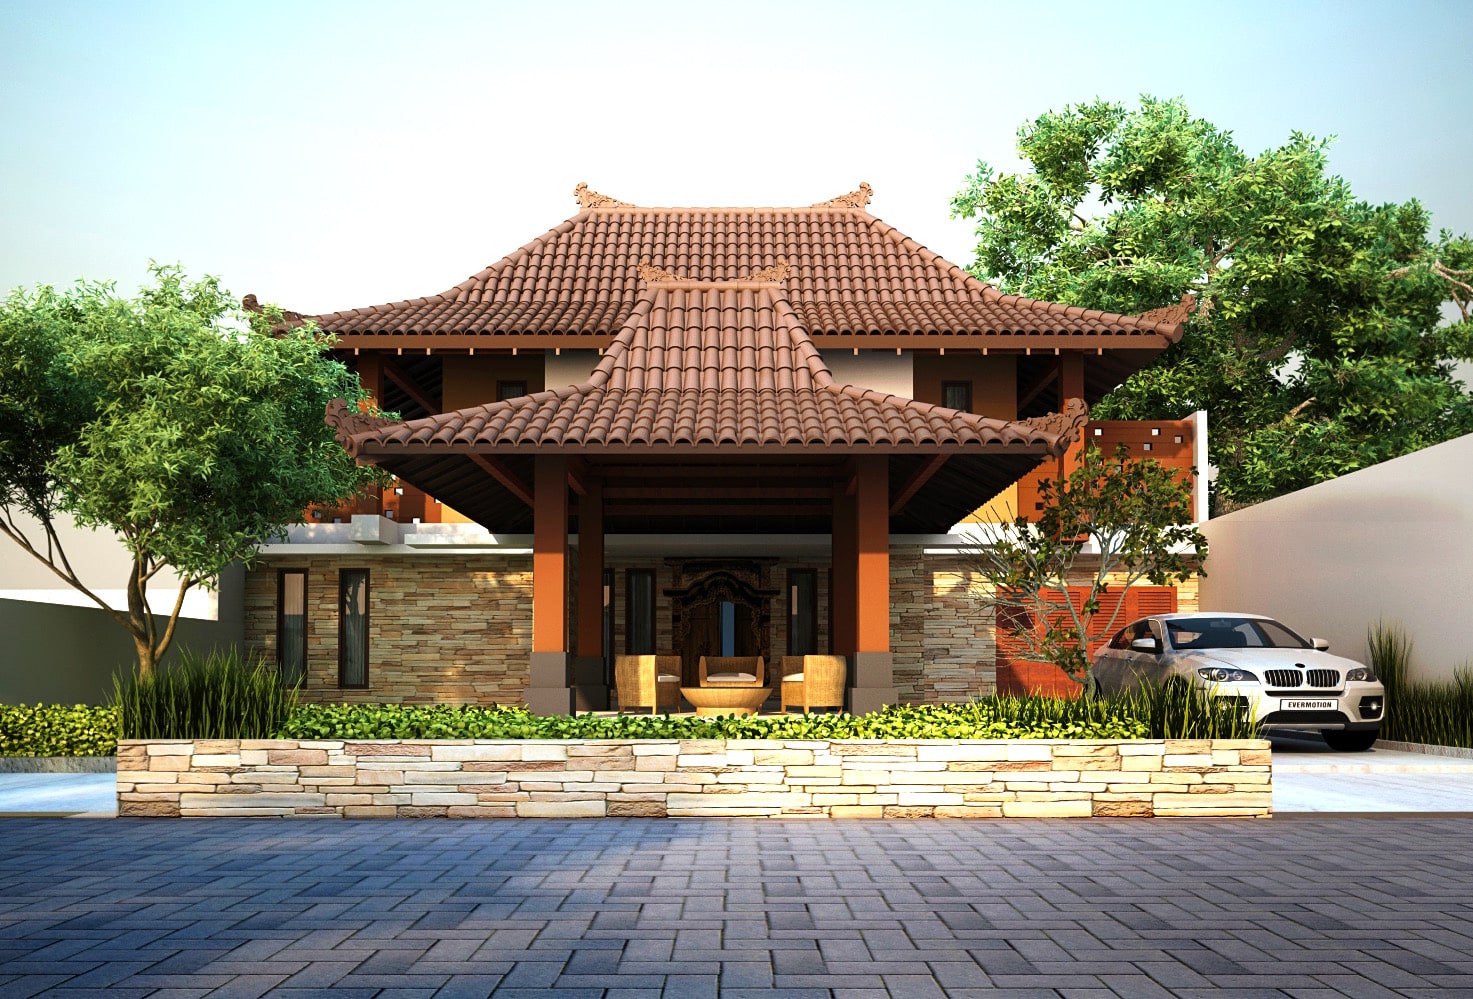 45 Contoh Desain Rumah Jawa dan Joglo (Klasik dan Modern)